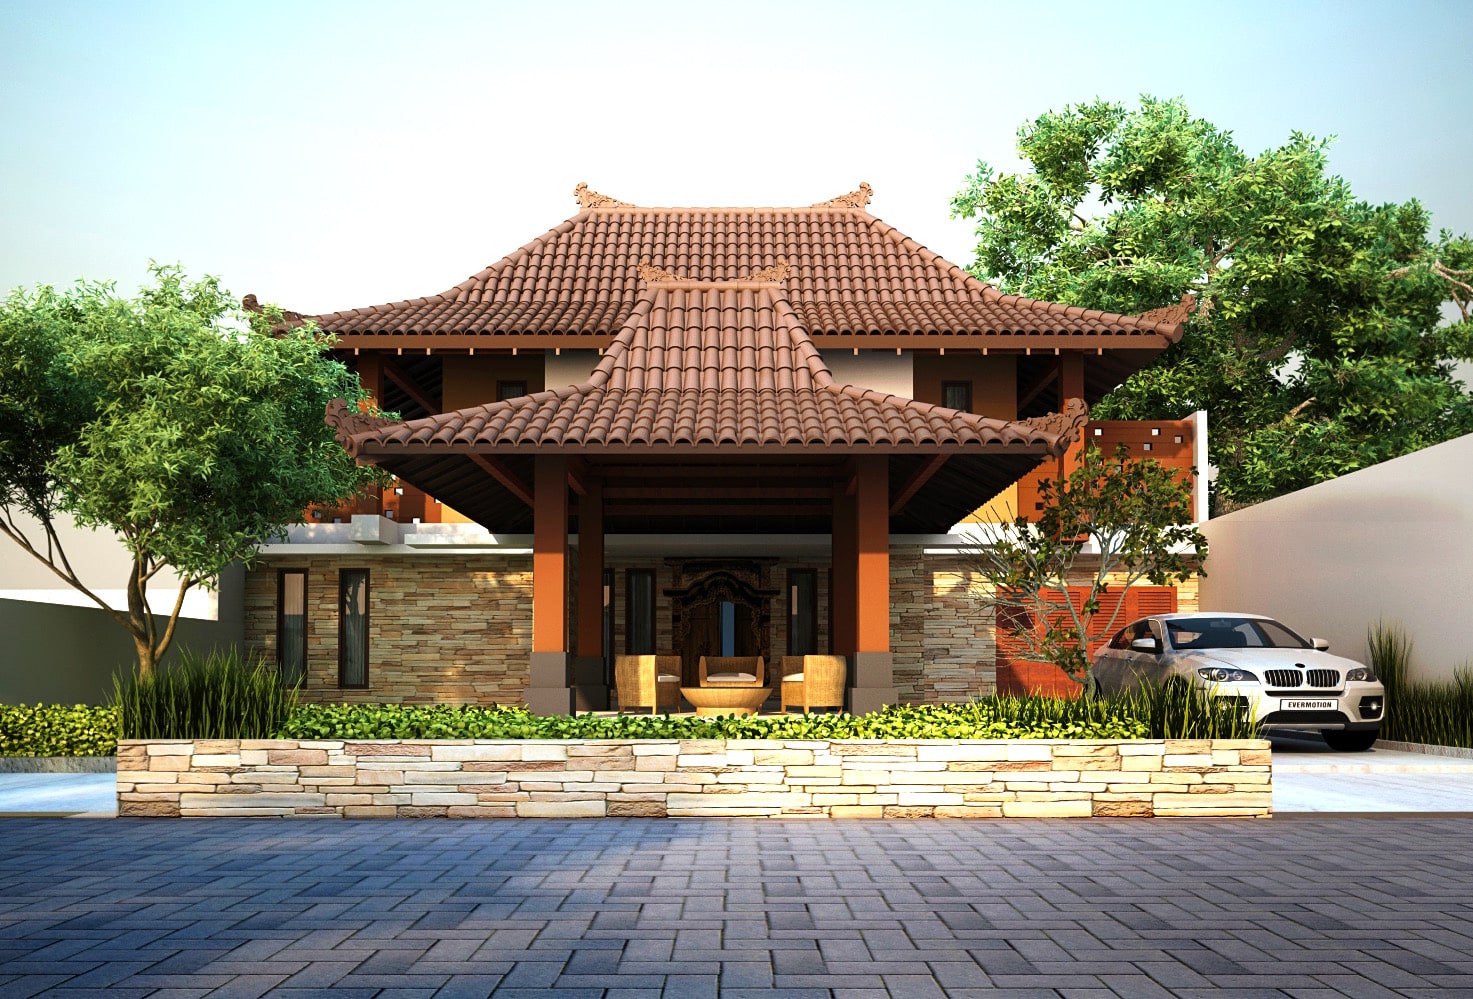 45 Contoh Desain Rumah Jawa dan Joglo (Klasik dan Modern)